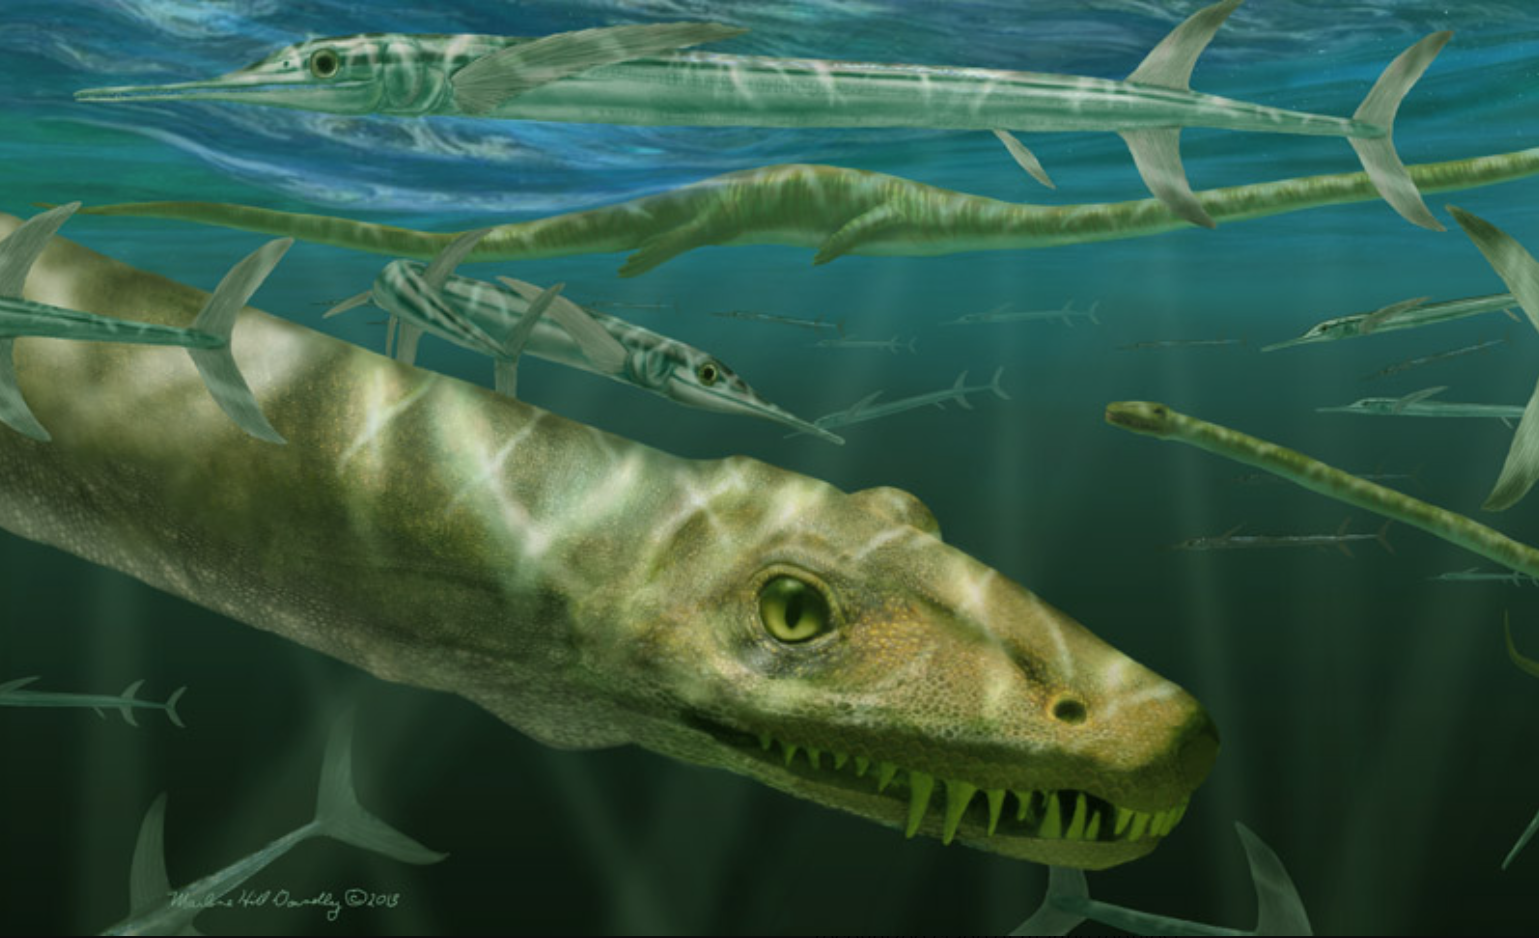 Representación gráfica del 'Dinocephalosaurus orientalis' entre un banco de grandes peces actinopterigios depredadores, Saurichthys.